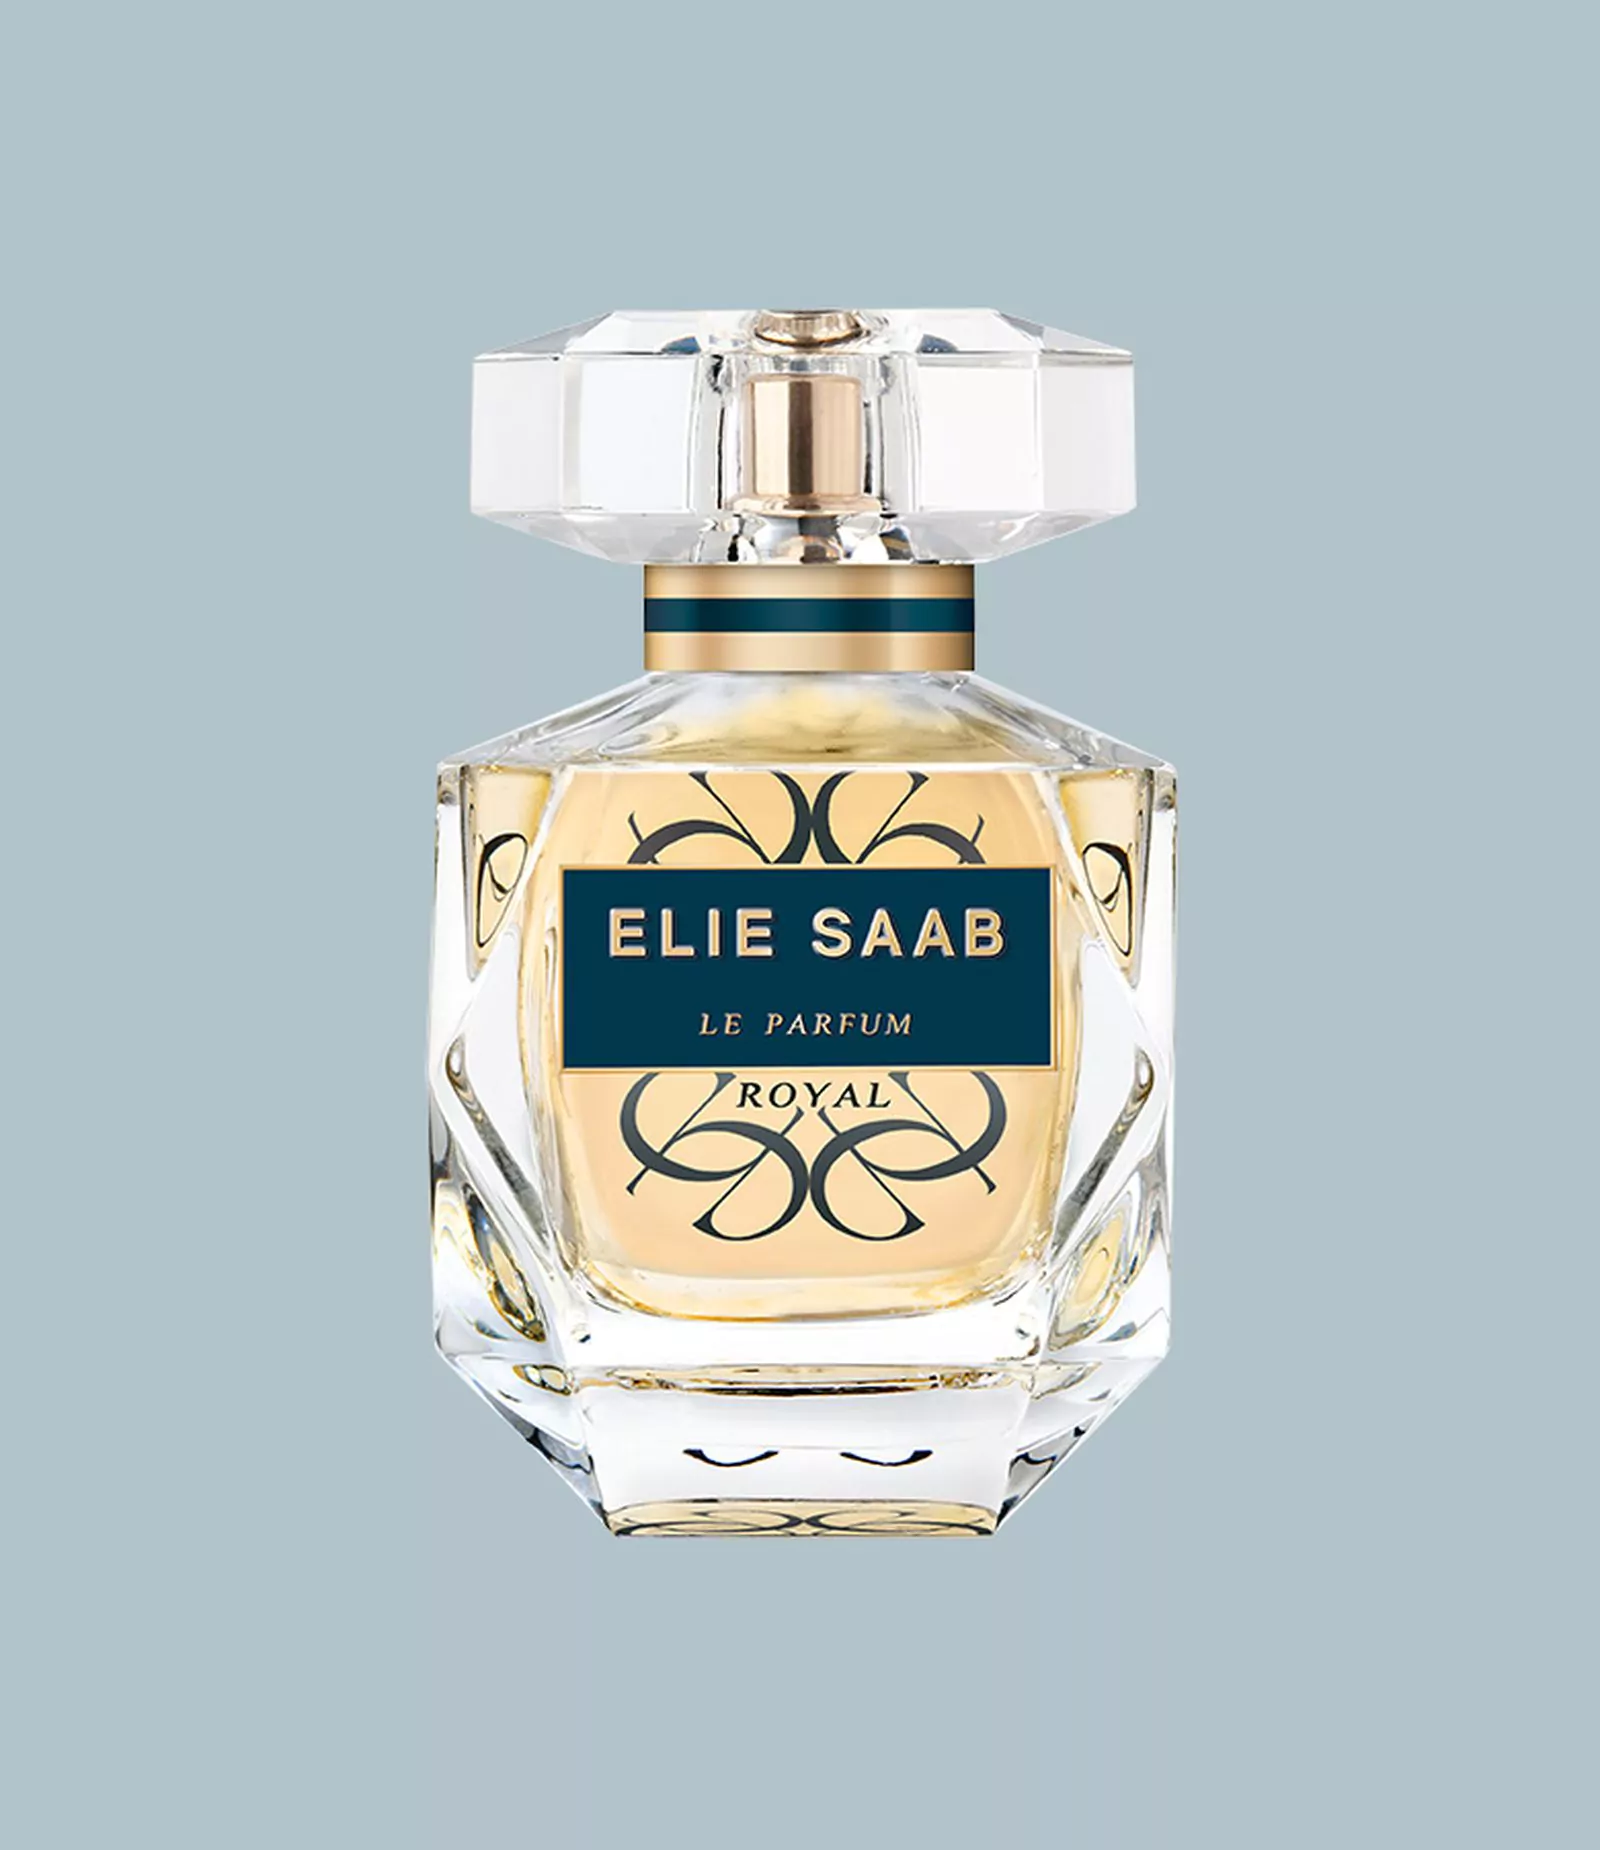 Elie Saab, Le Parfum Royal